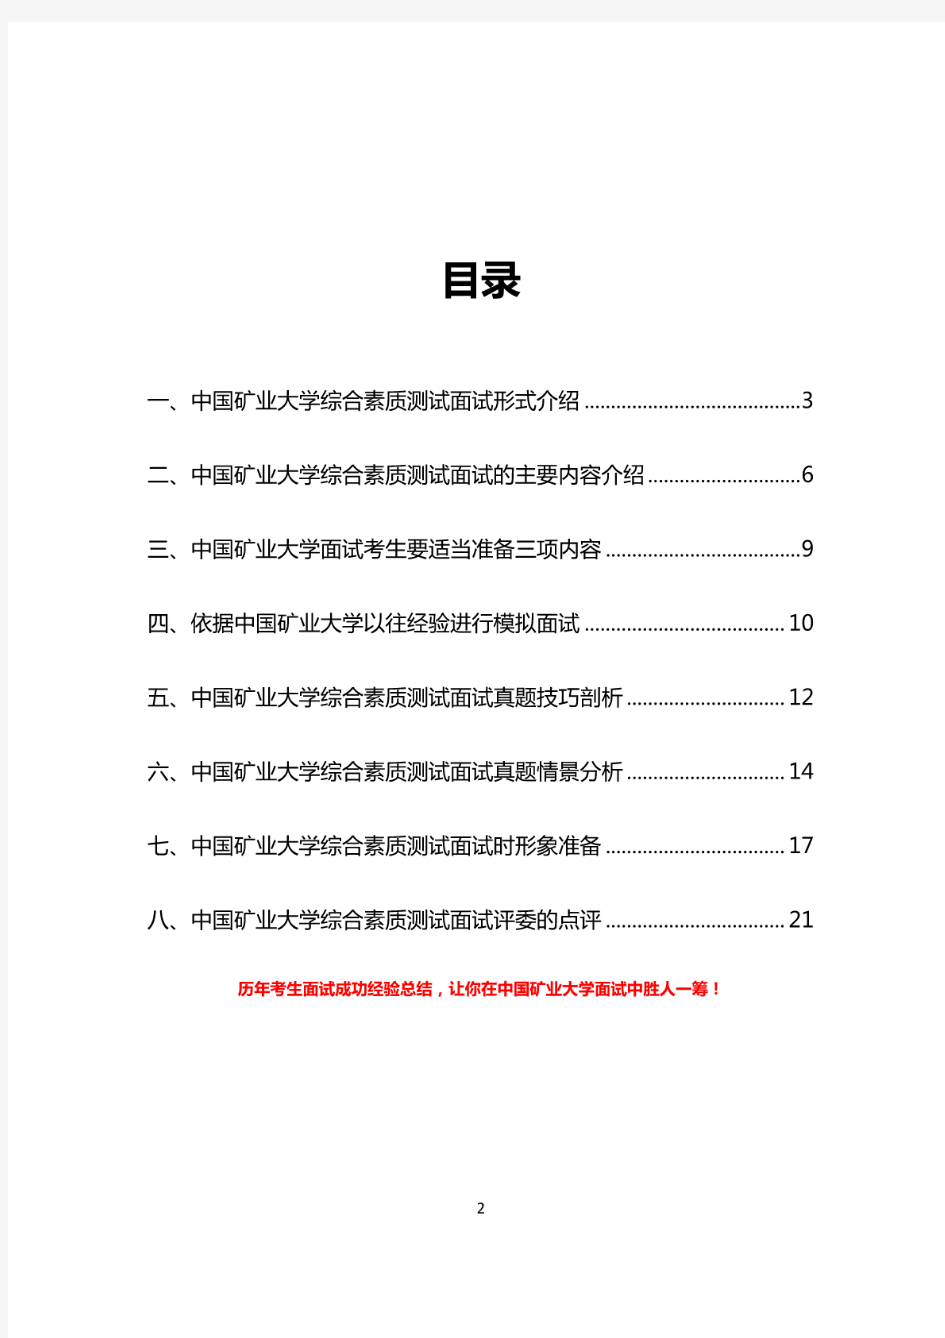 最新版中国矿业大学综合素质测试面试题历年总结